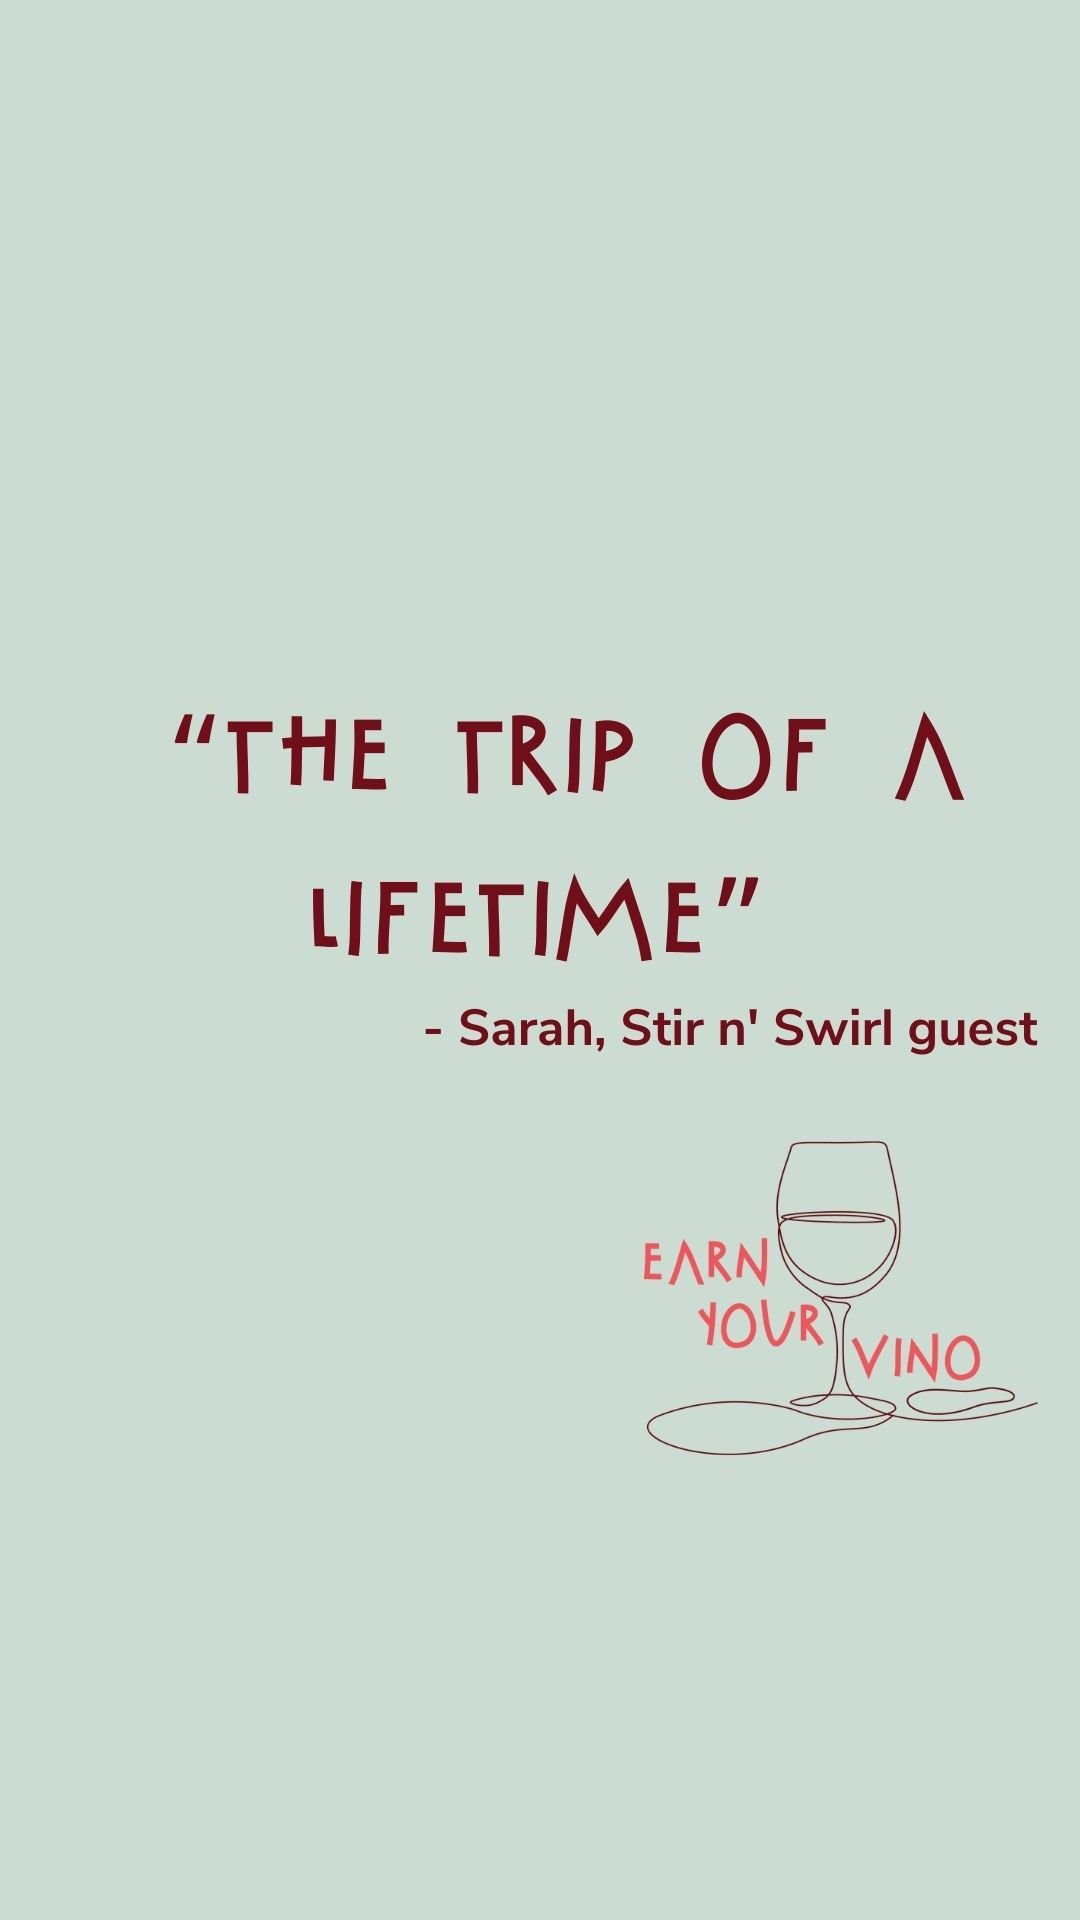 Sarah - Stir n' Swirl